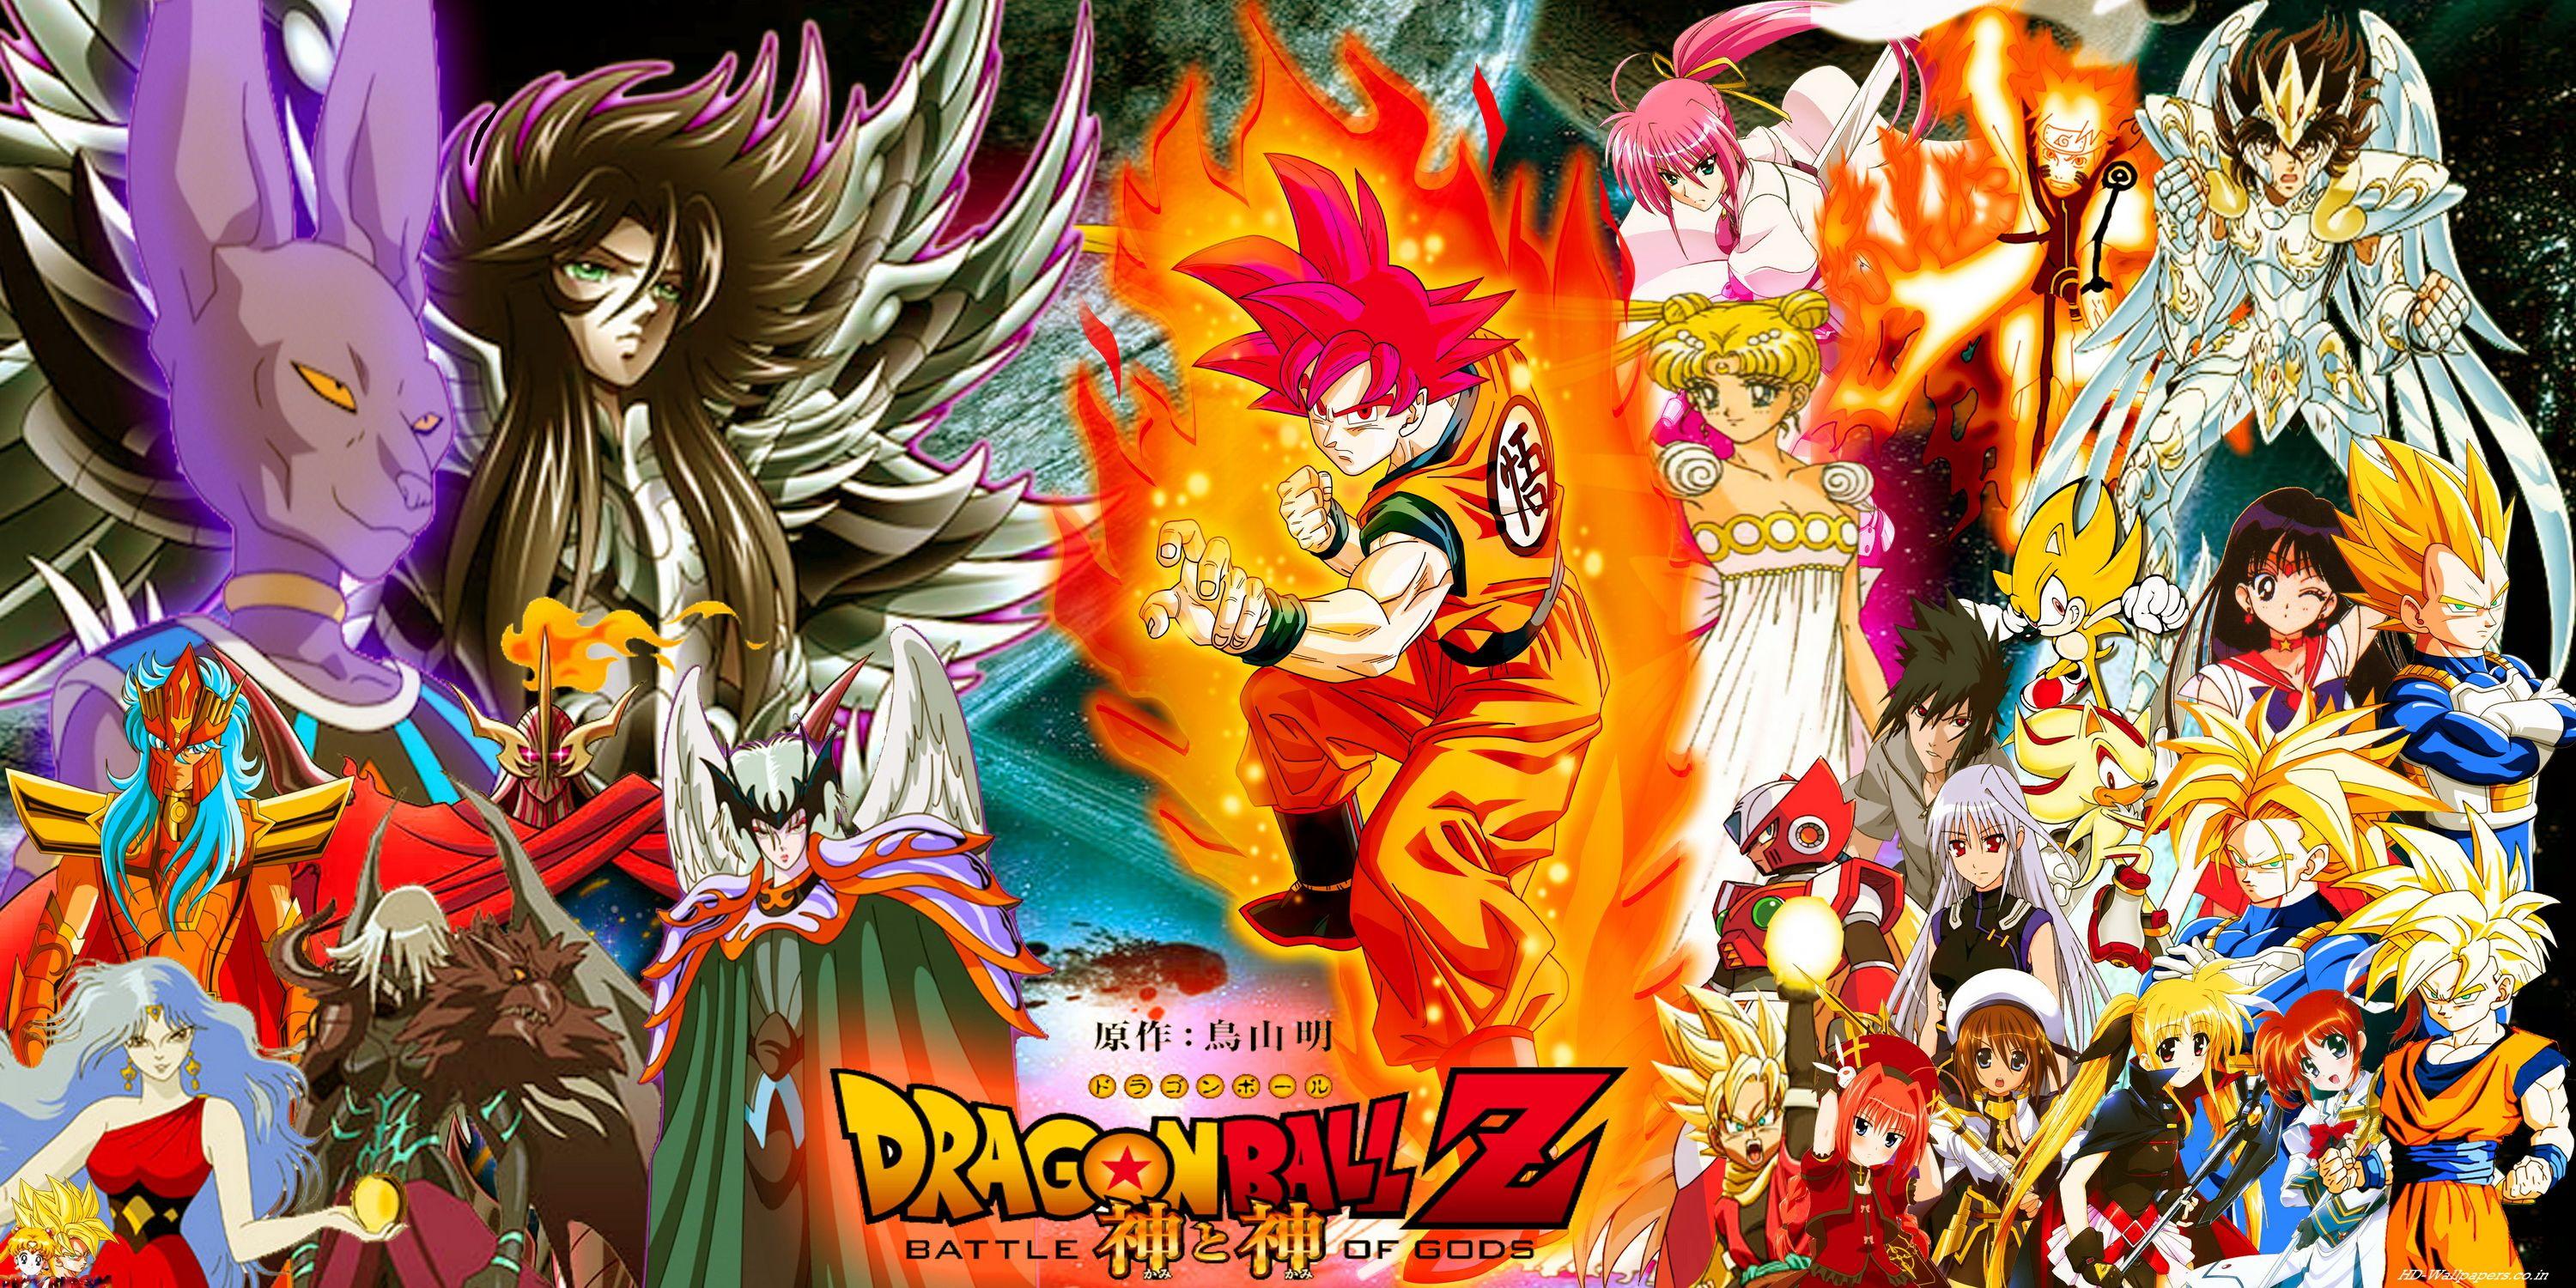 Download Anime IPad Goku And Dragon Ball Wallpaper | Wallpapers.com